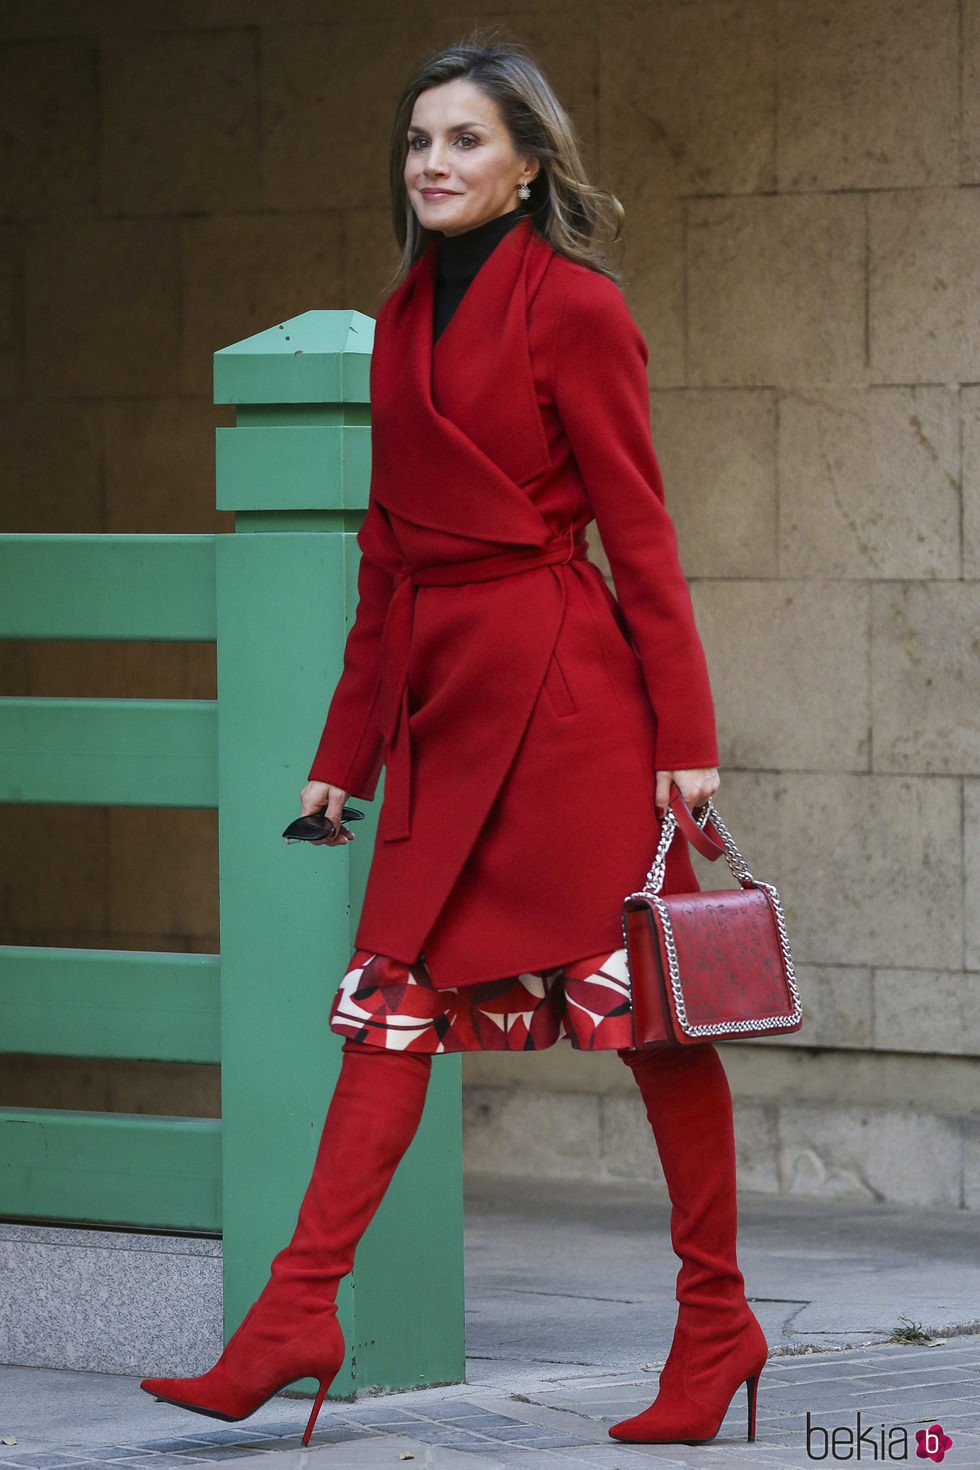 La Reina Letizia luce un  espectacular total look en su color favorito: el rojo